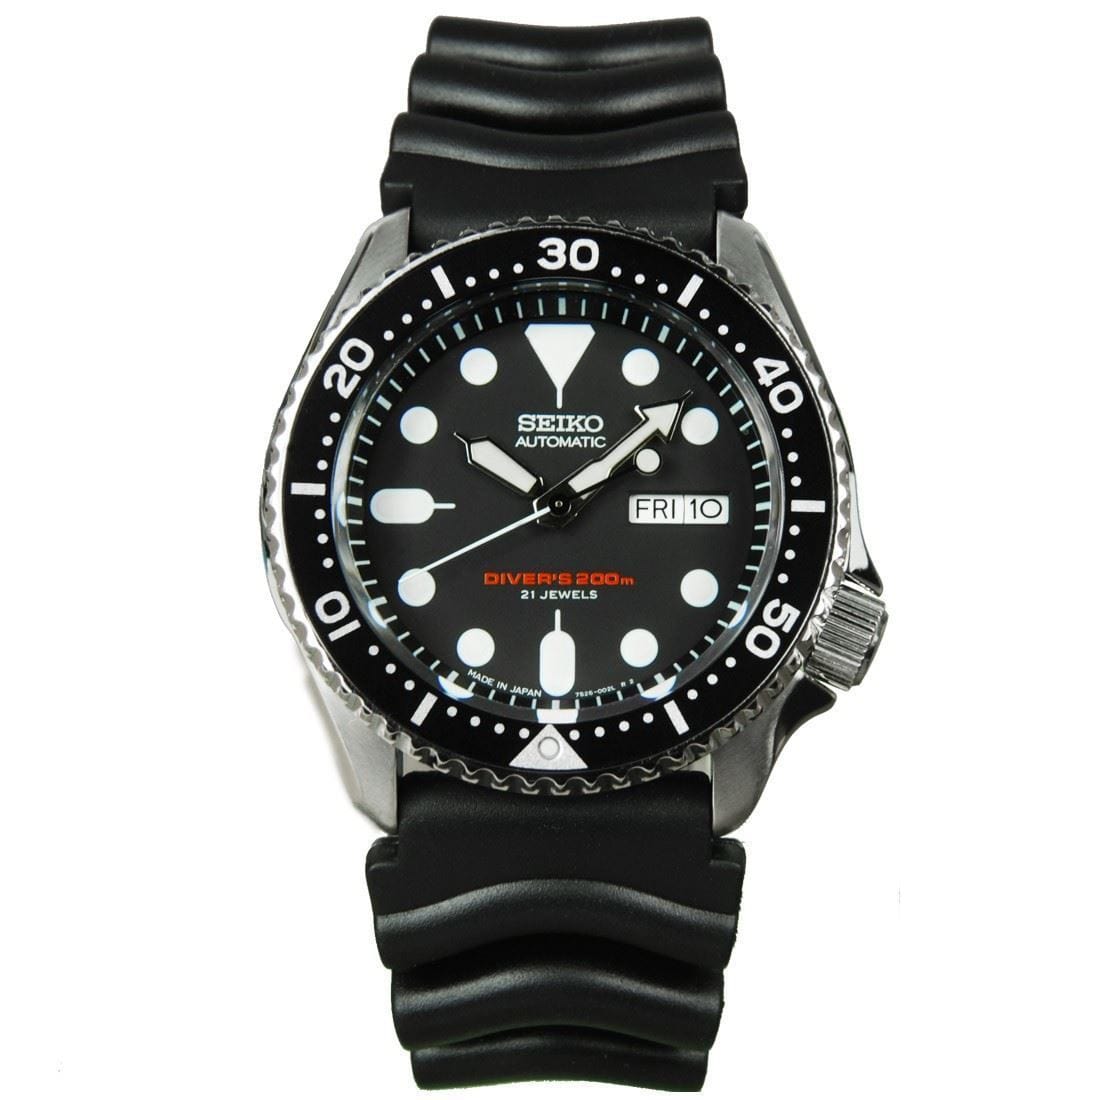 Seiko Japan Automatic 21 Jewels Watch SKX007J1 SKX007 with Extra Bracelet